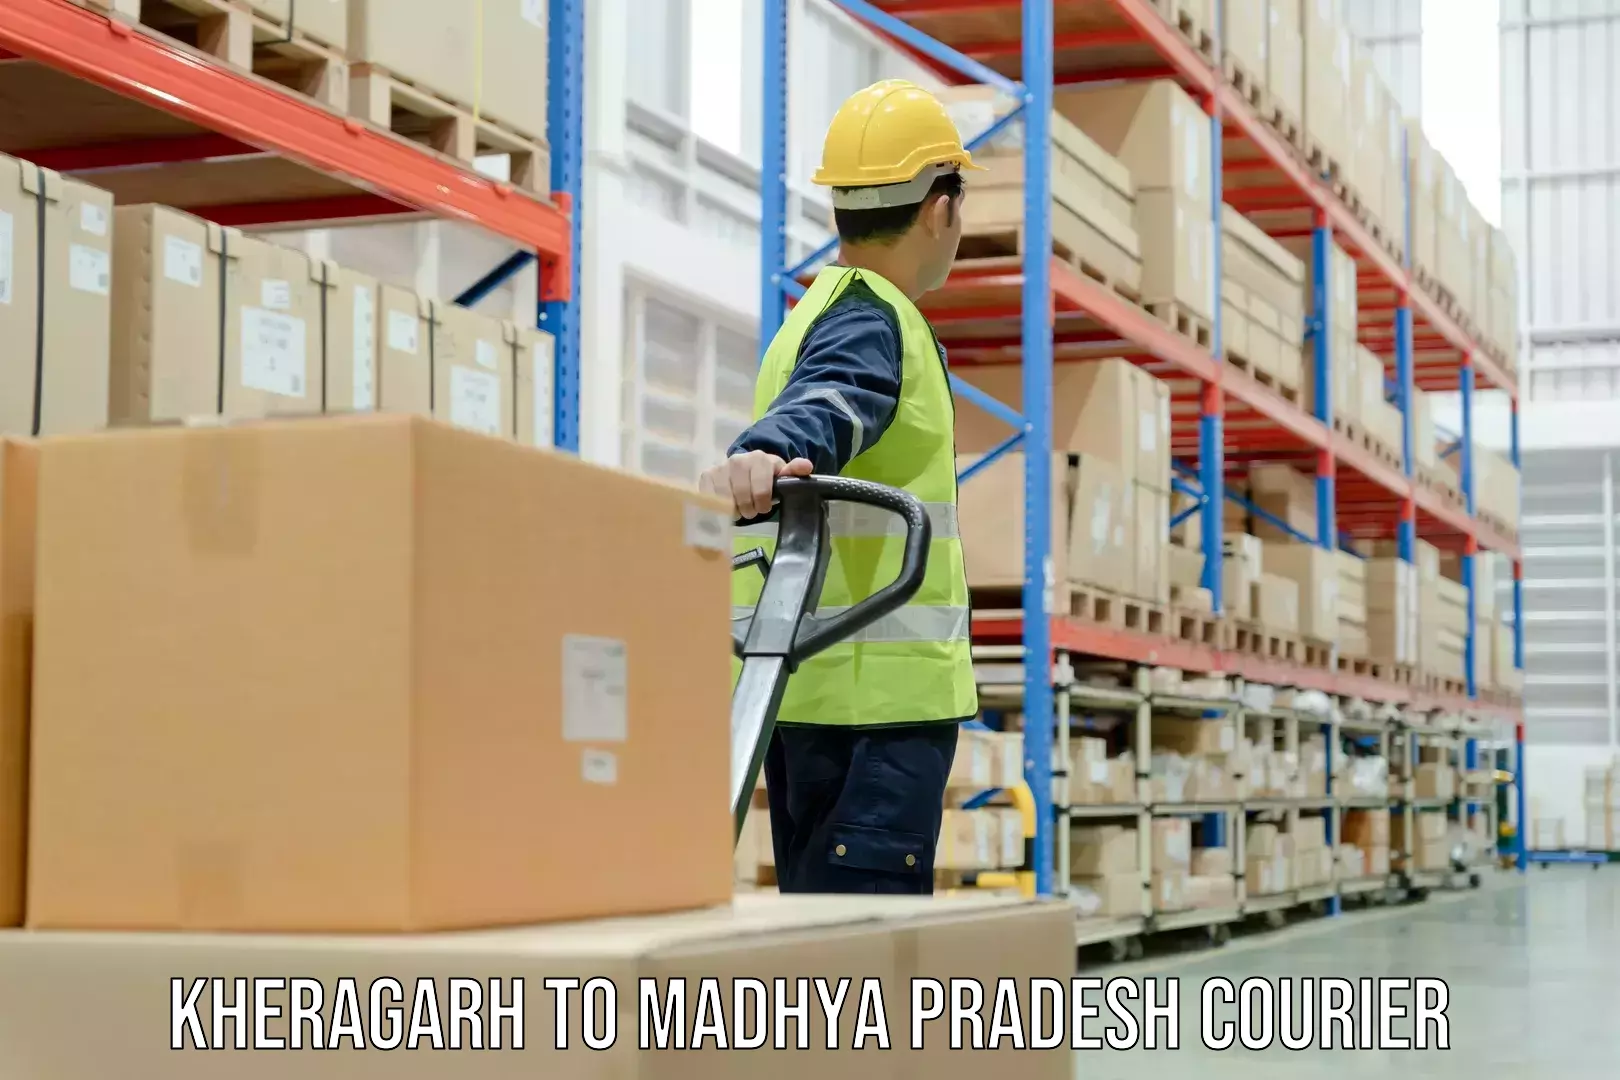 24-hour courier services Kheragarh to Raghogarh